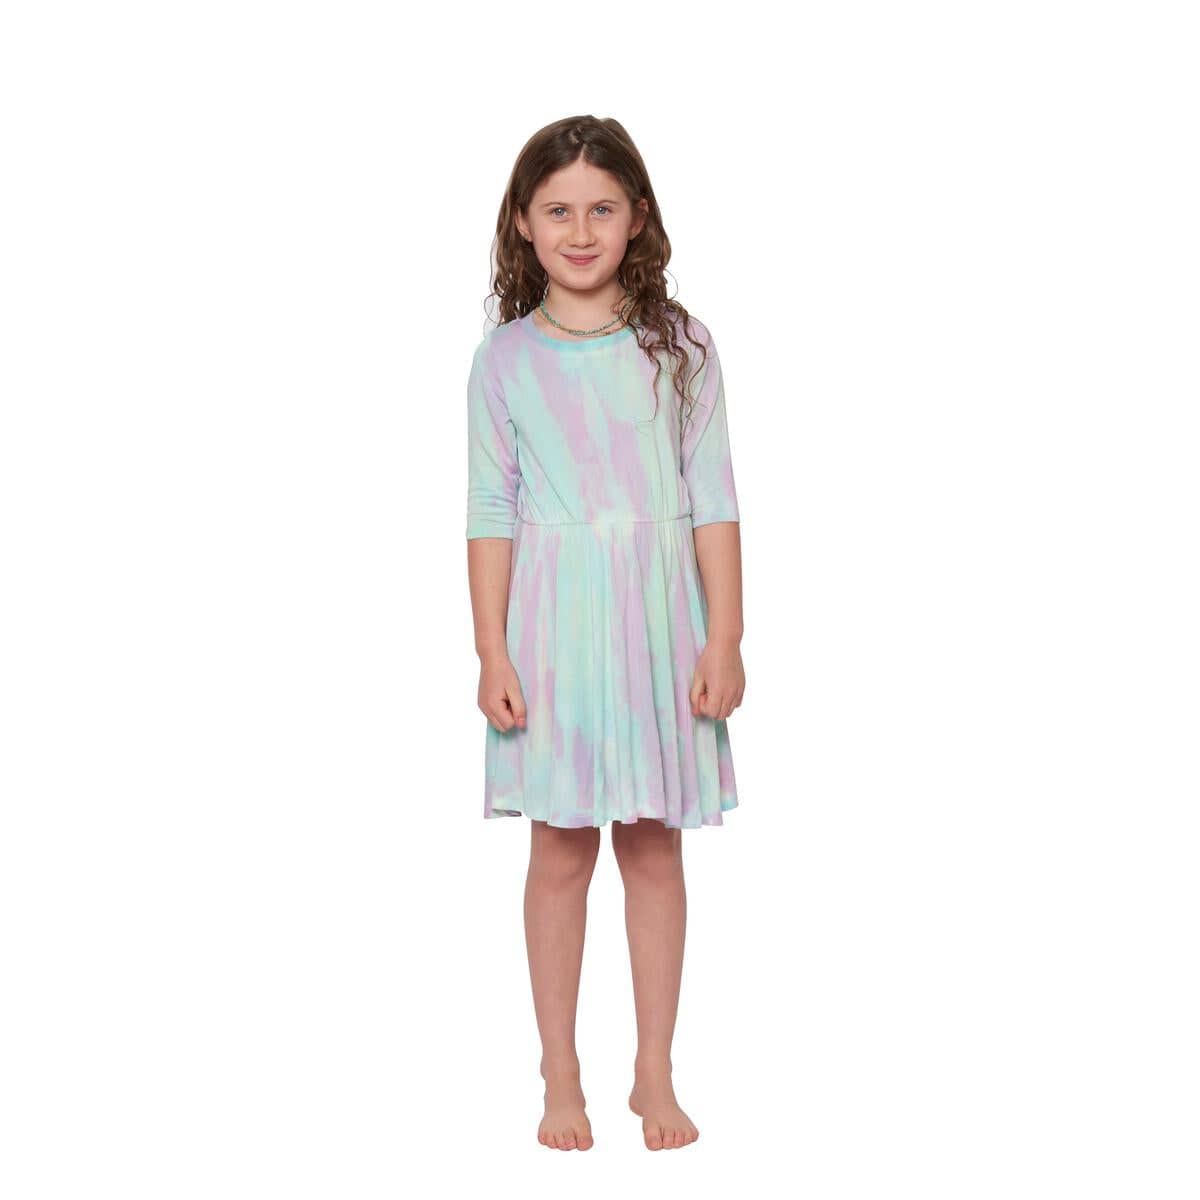 Tea Dress in Prism - Twinkle Twinkle Little One